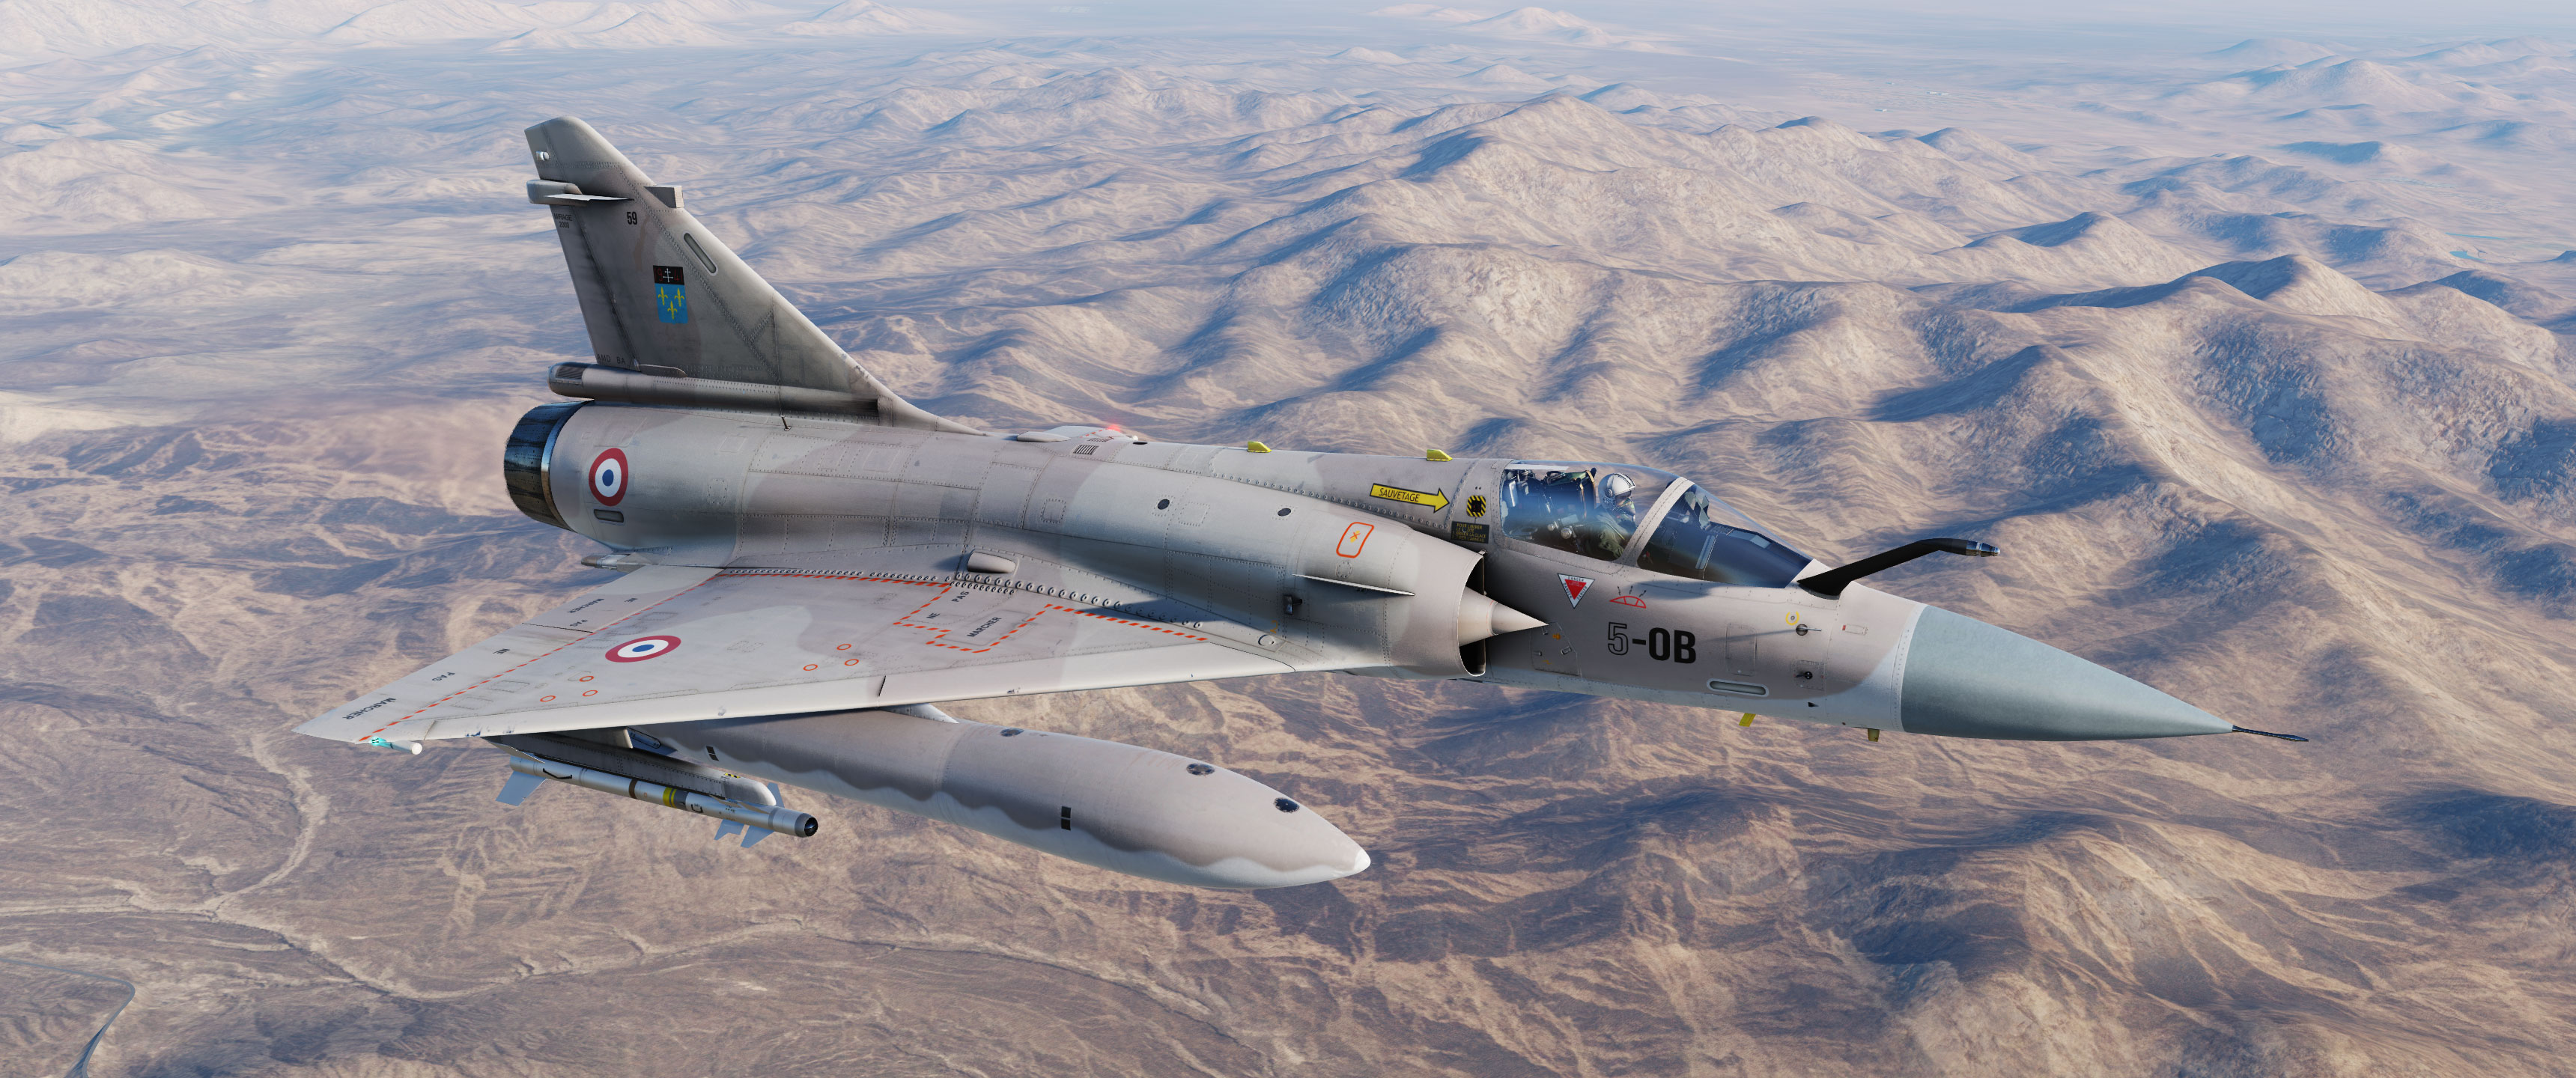 Mirage-2000C Escadron Ile de France opération Desert Storm v2.2